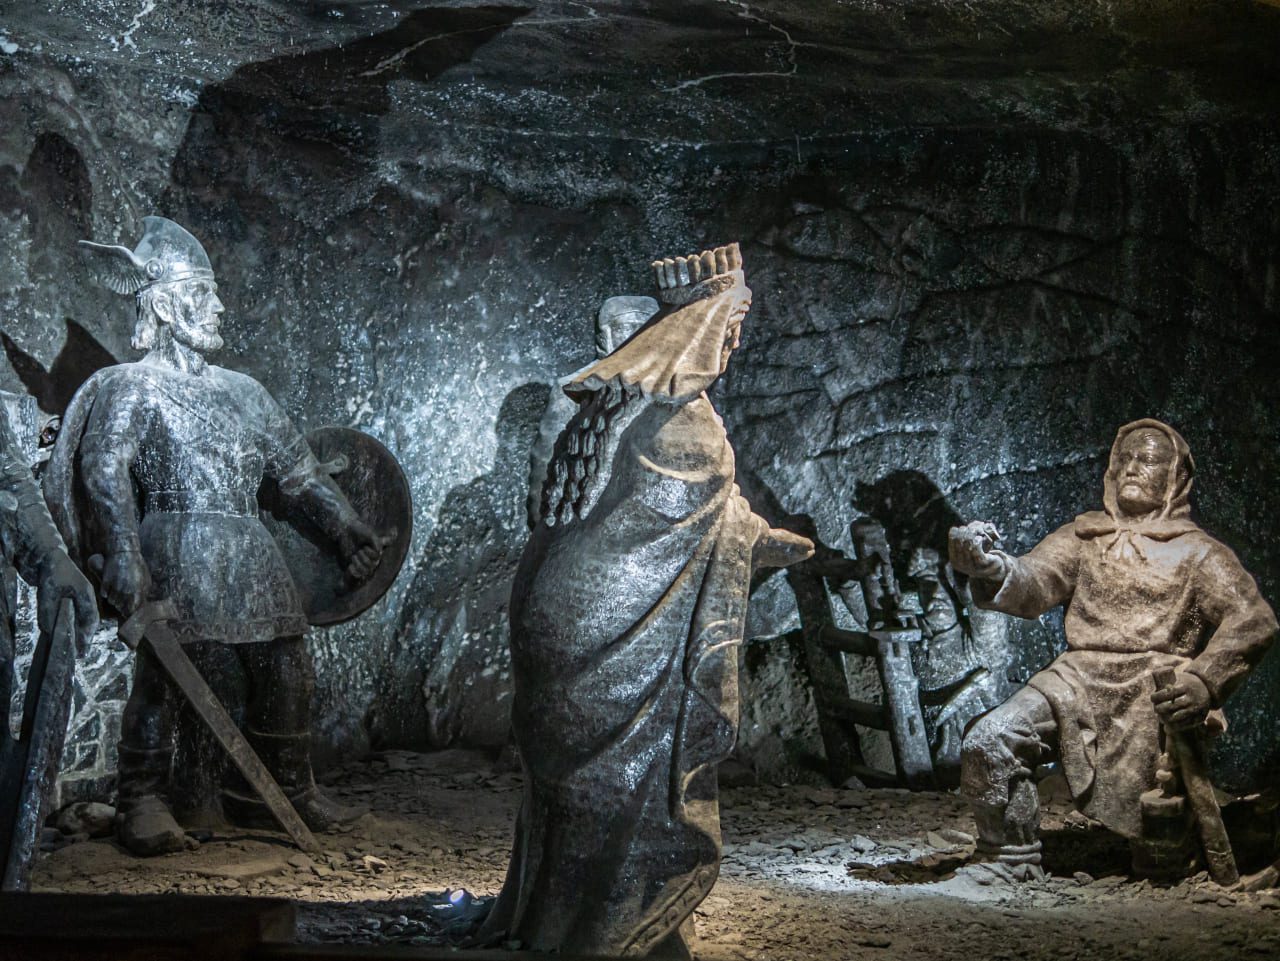 kopalnia soli w wieliczce rzeźby z soli legenda o świętej kindze